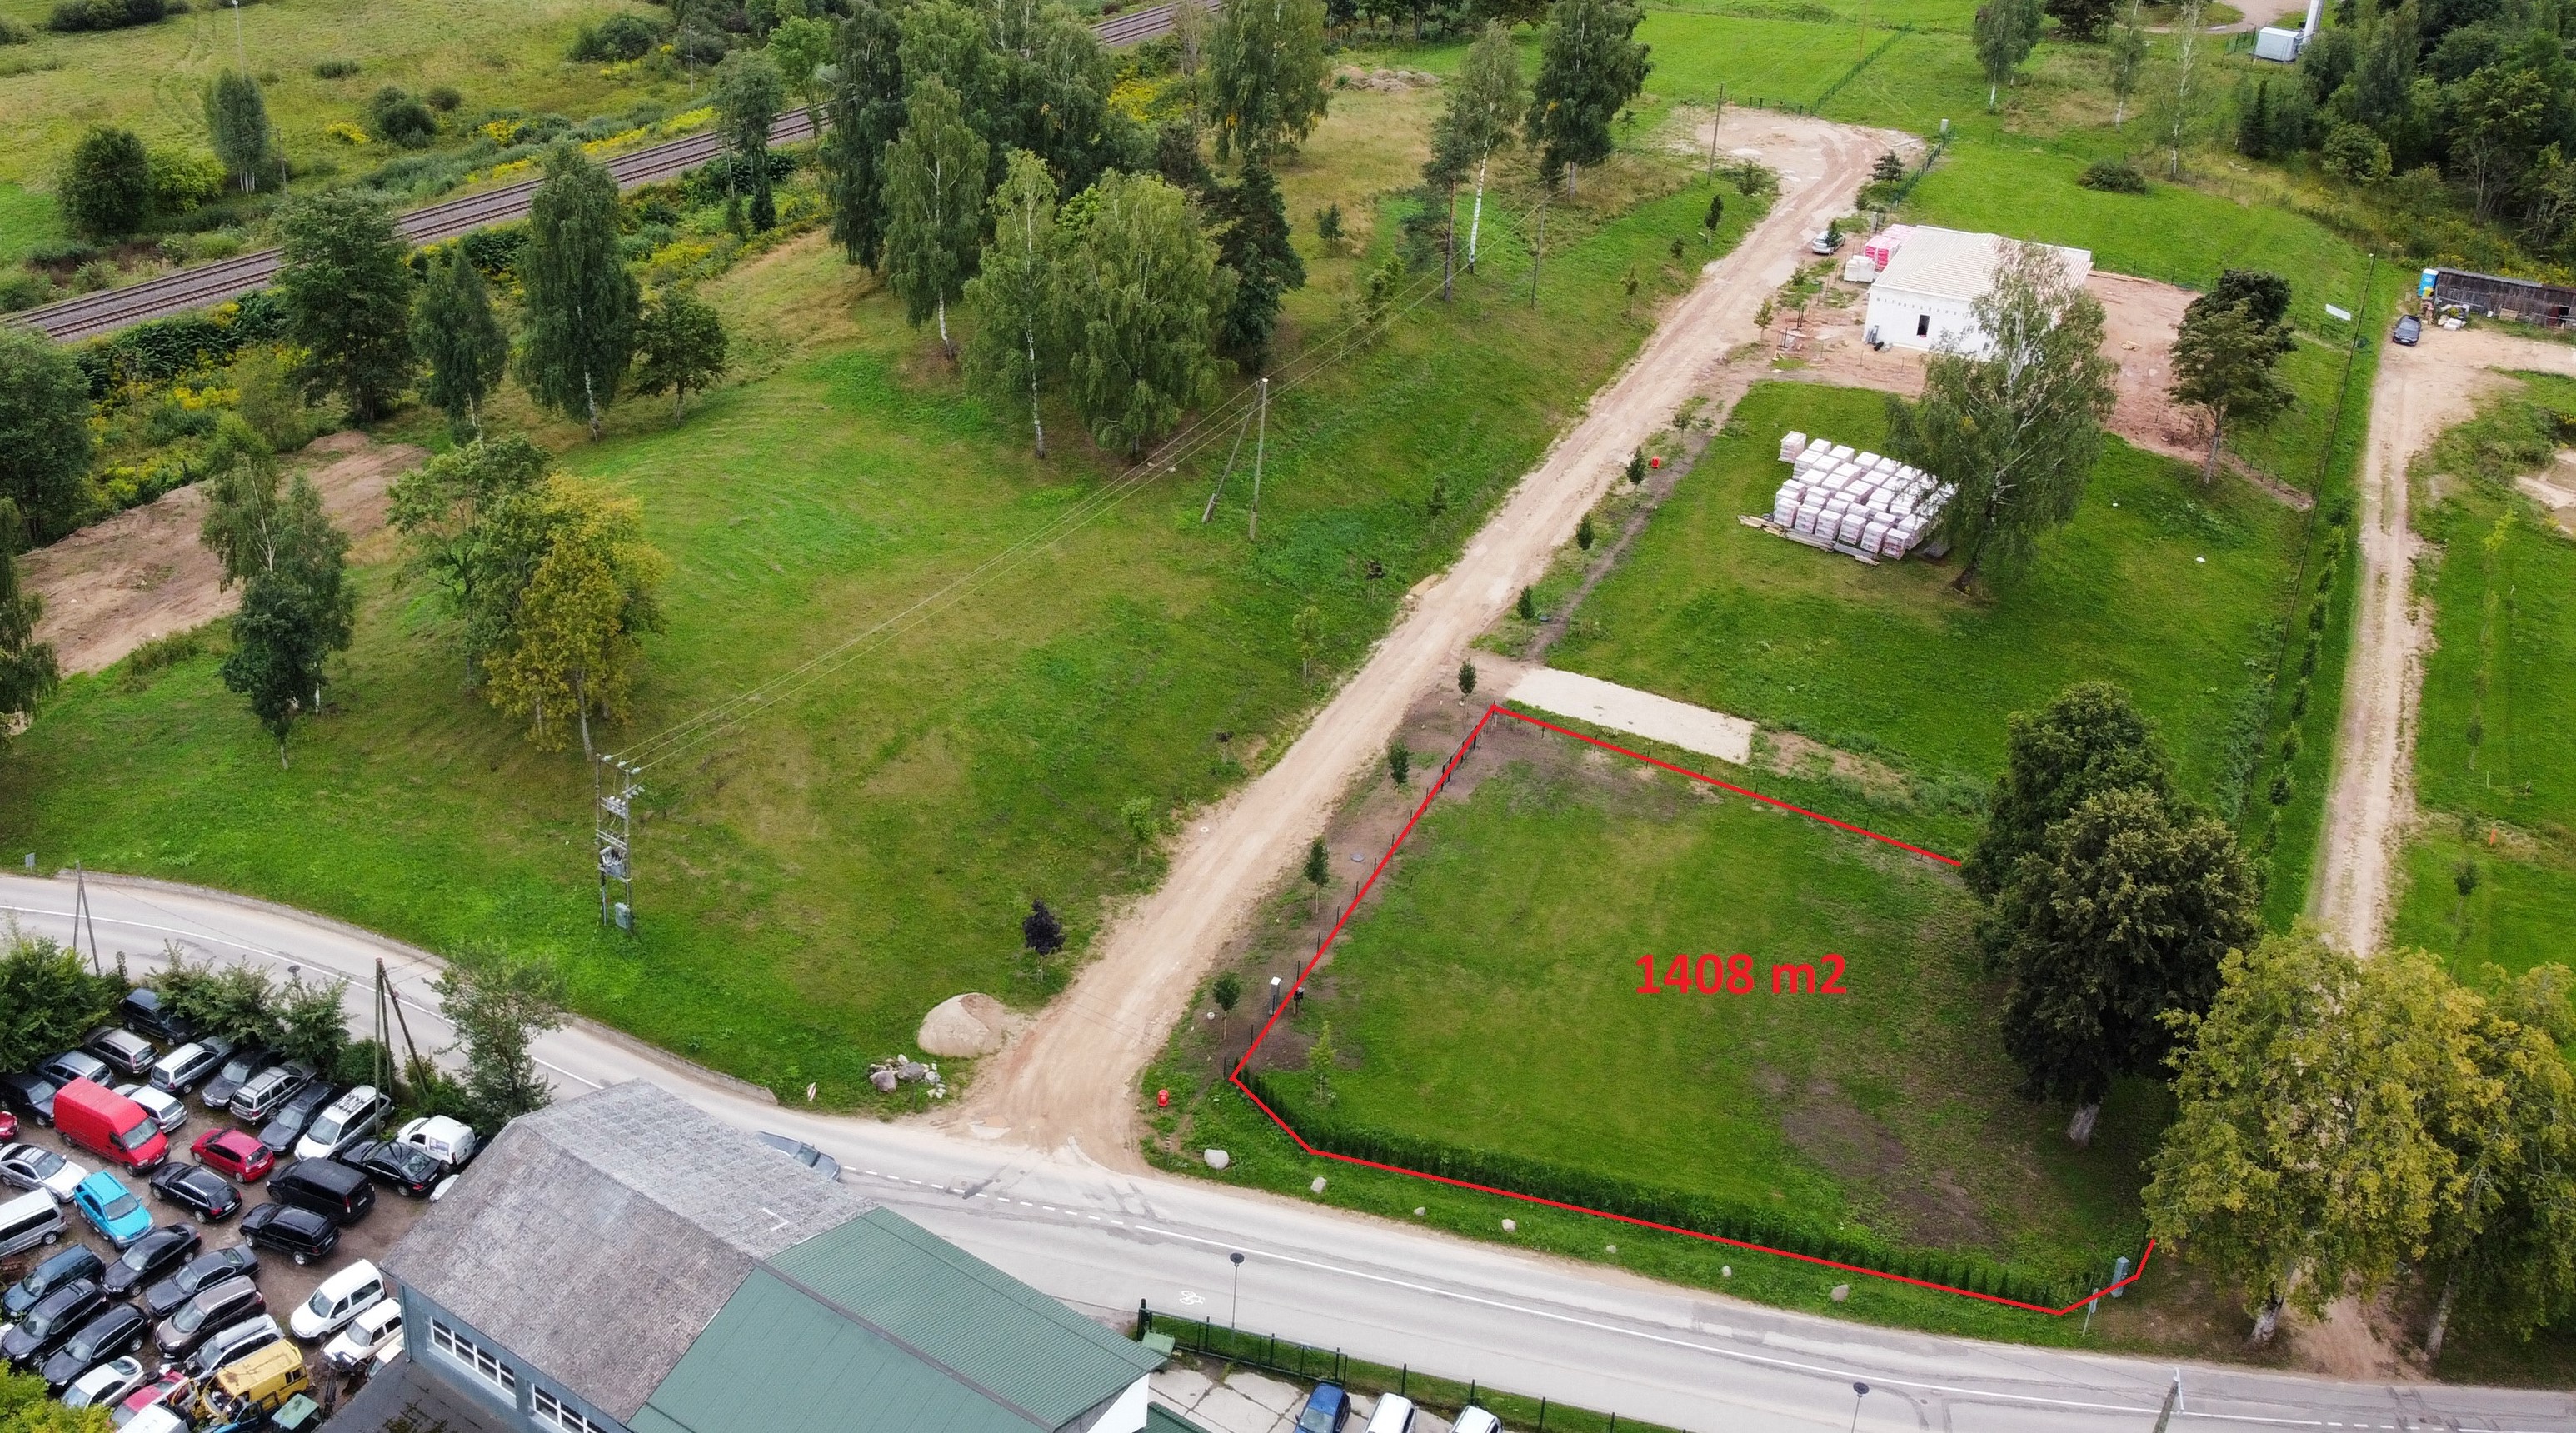 Land plot for sale, Kaķīškalna street - Image 1